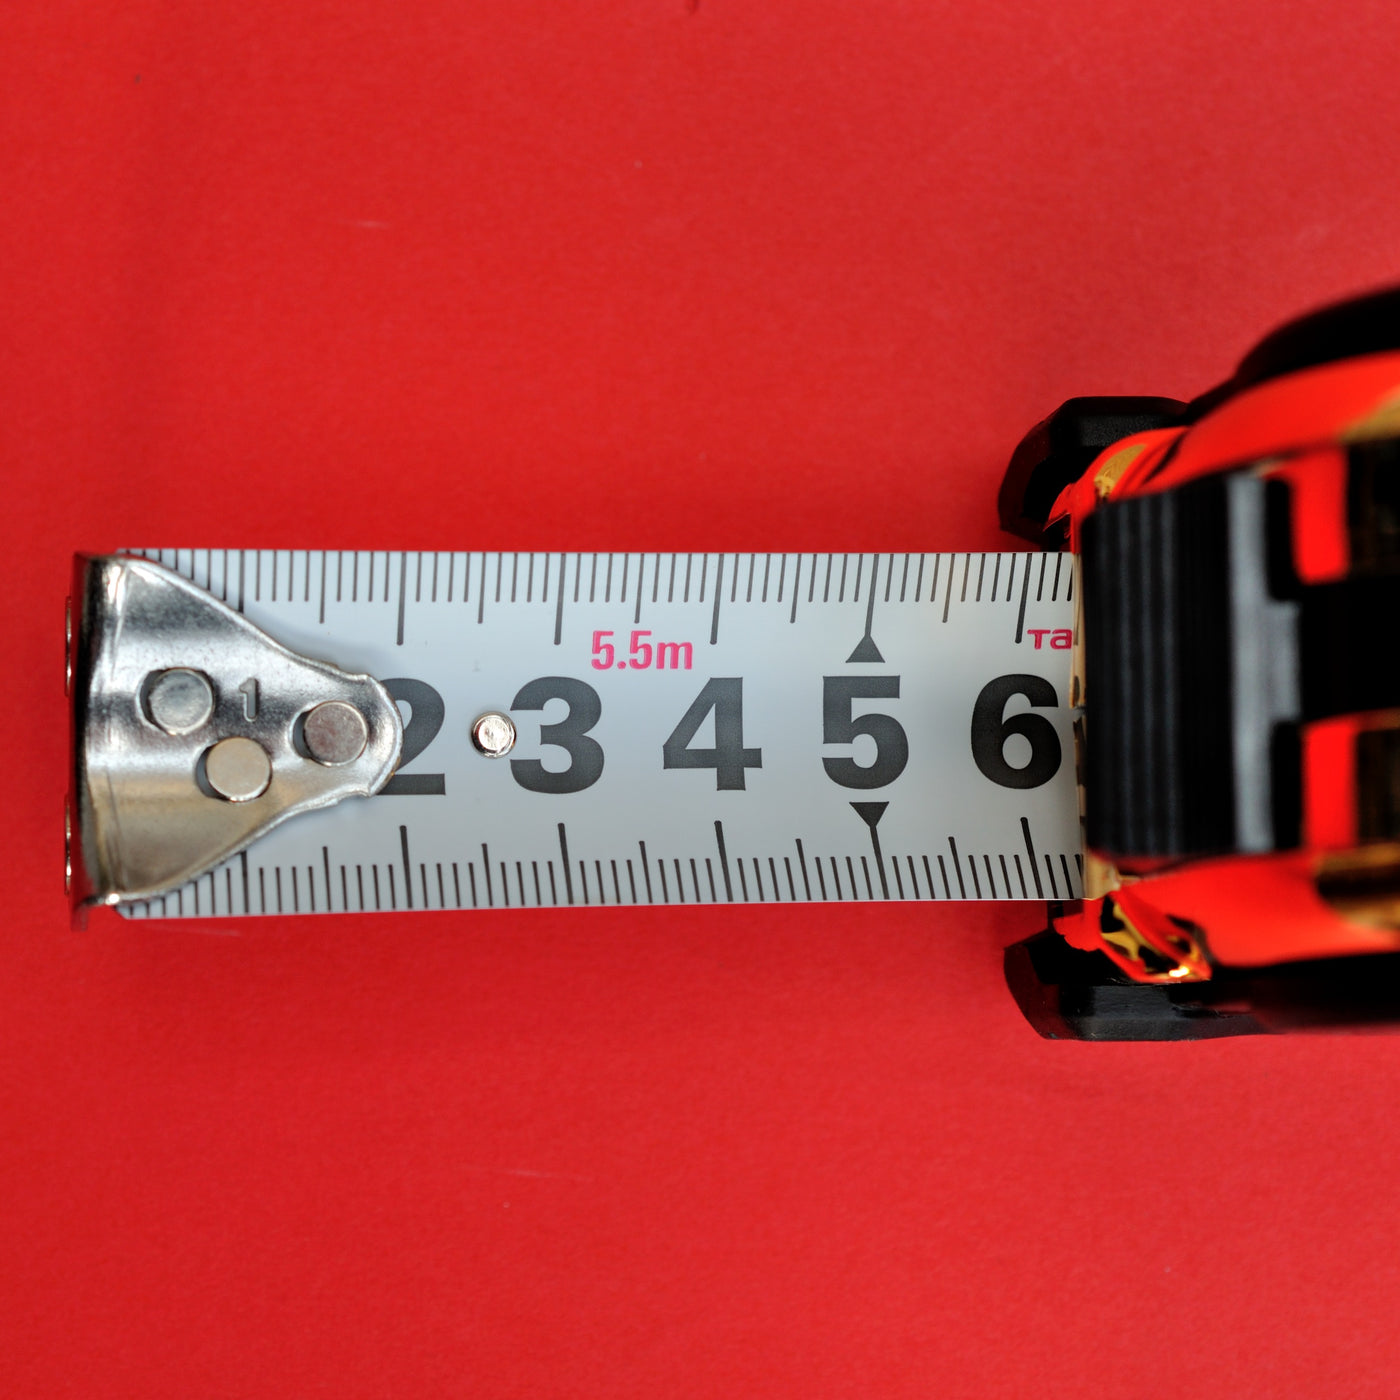 5 Meter Measuring Tape